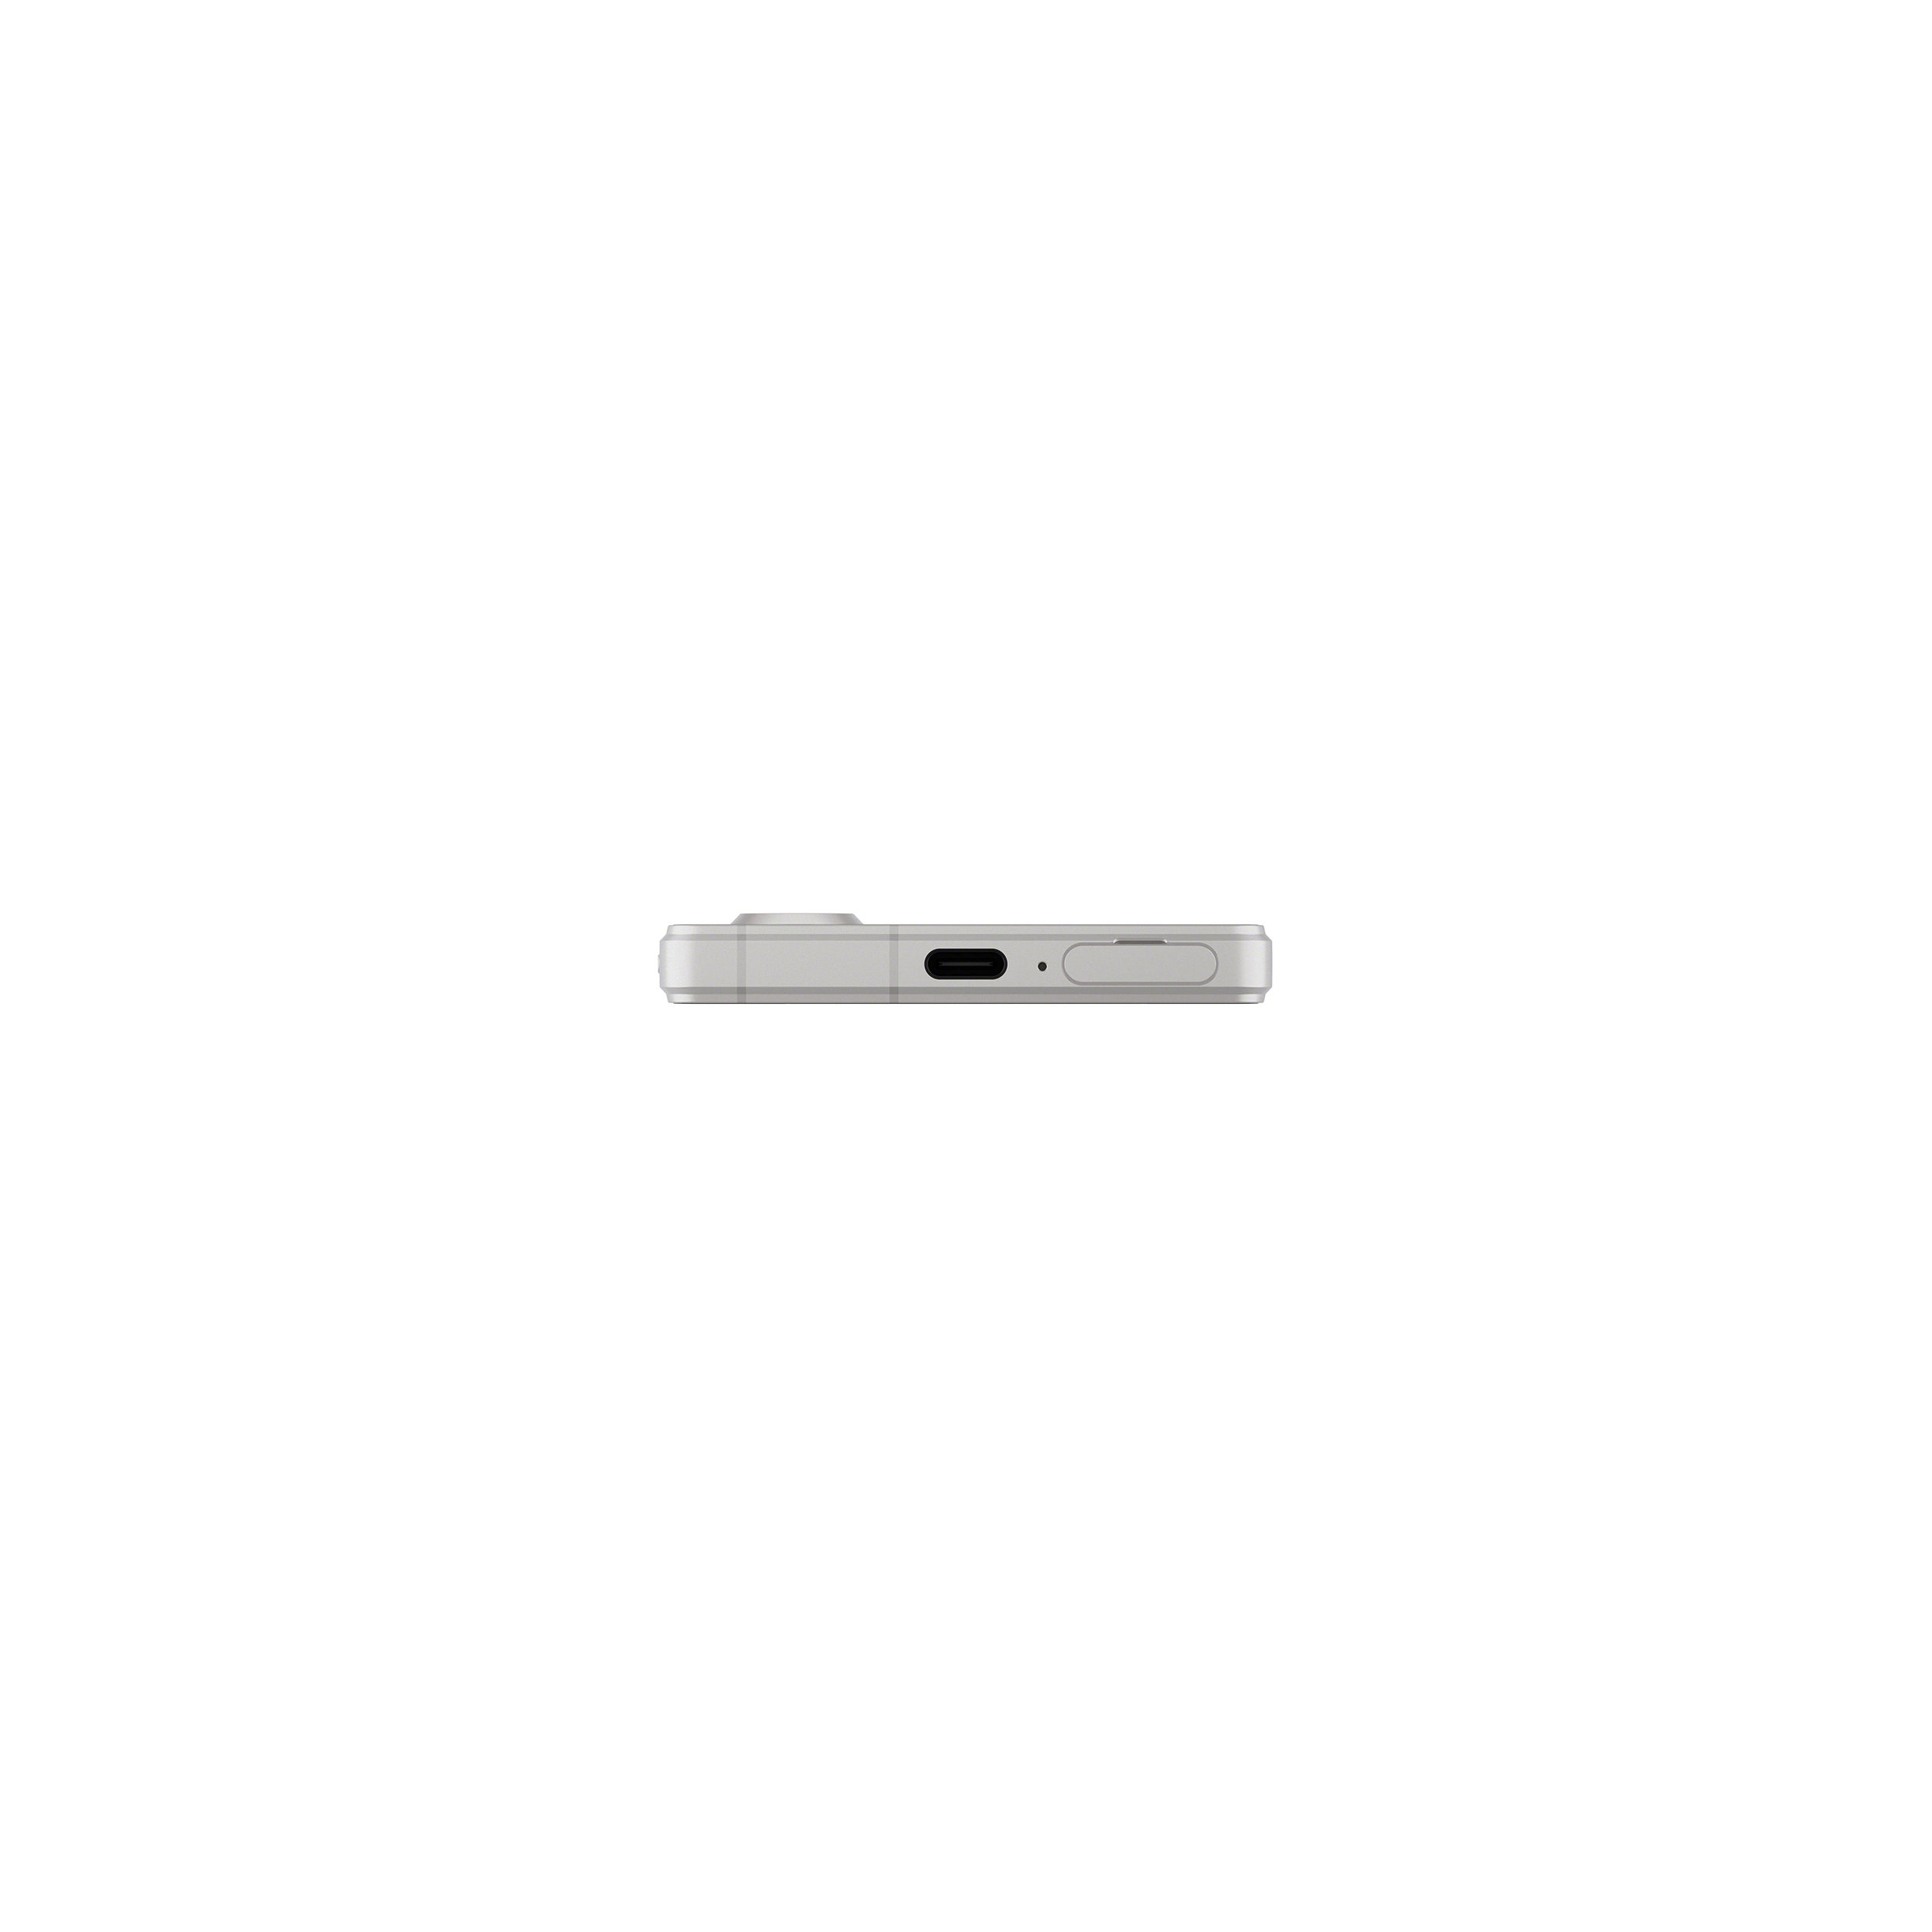 銀色 Xperia 5 V 手機底部圖